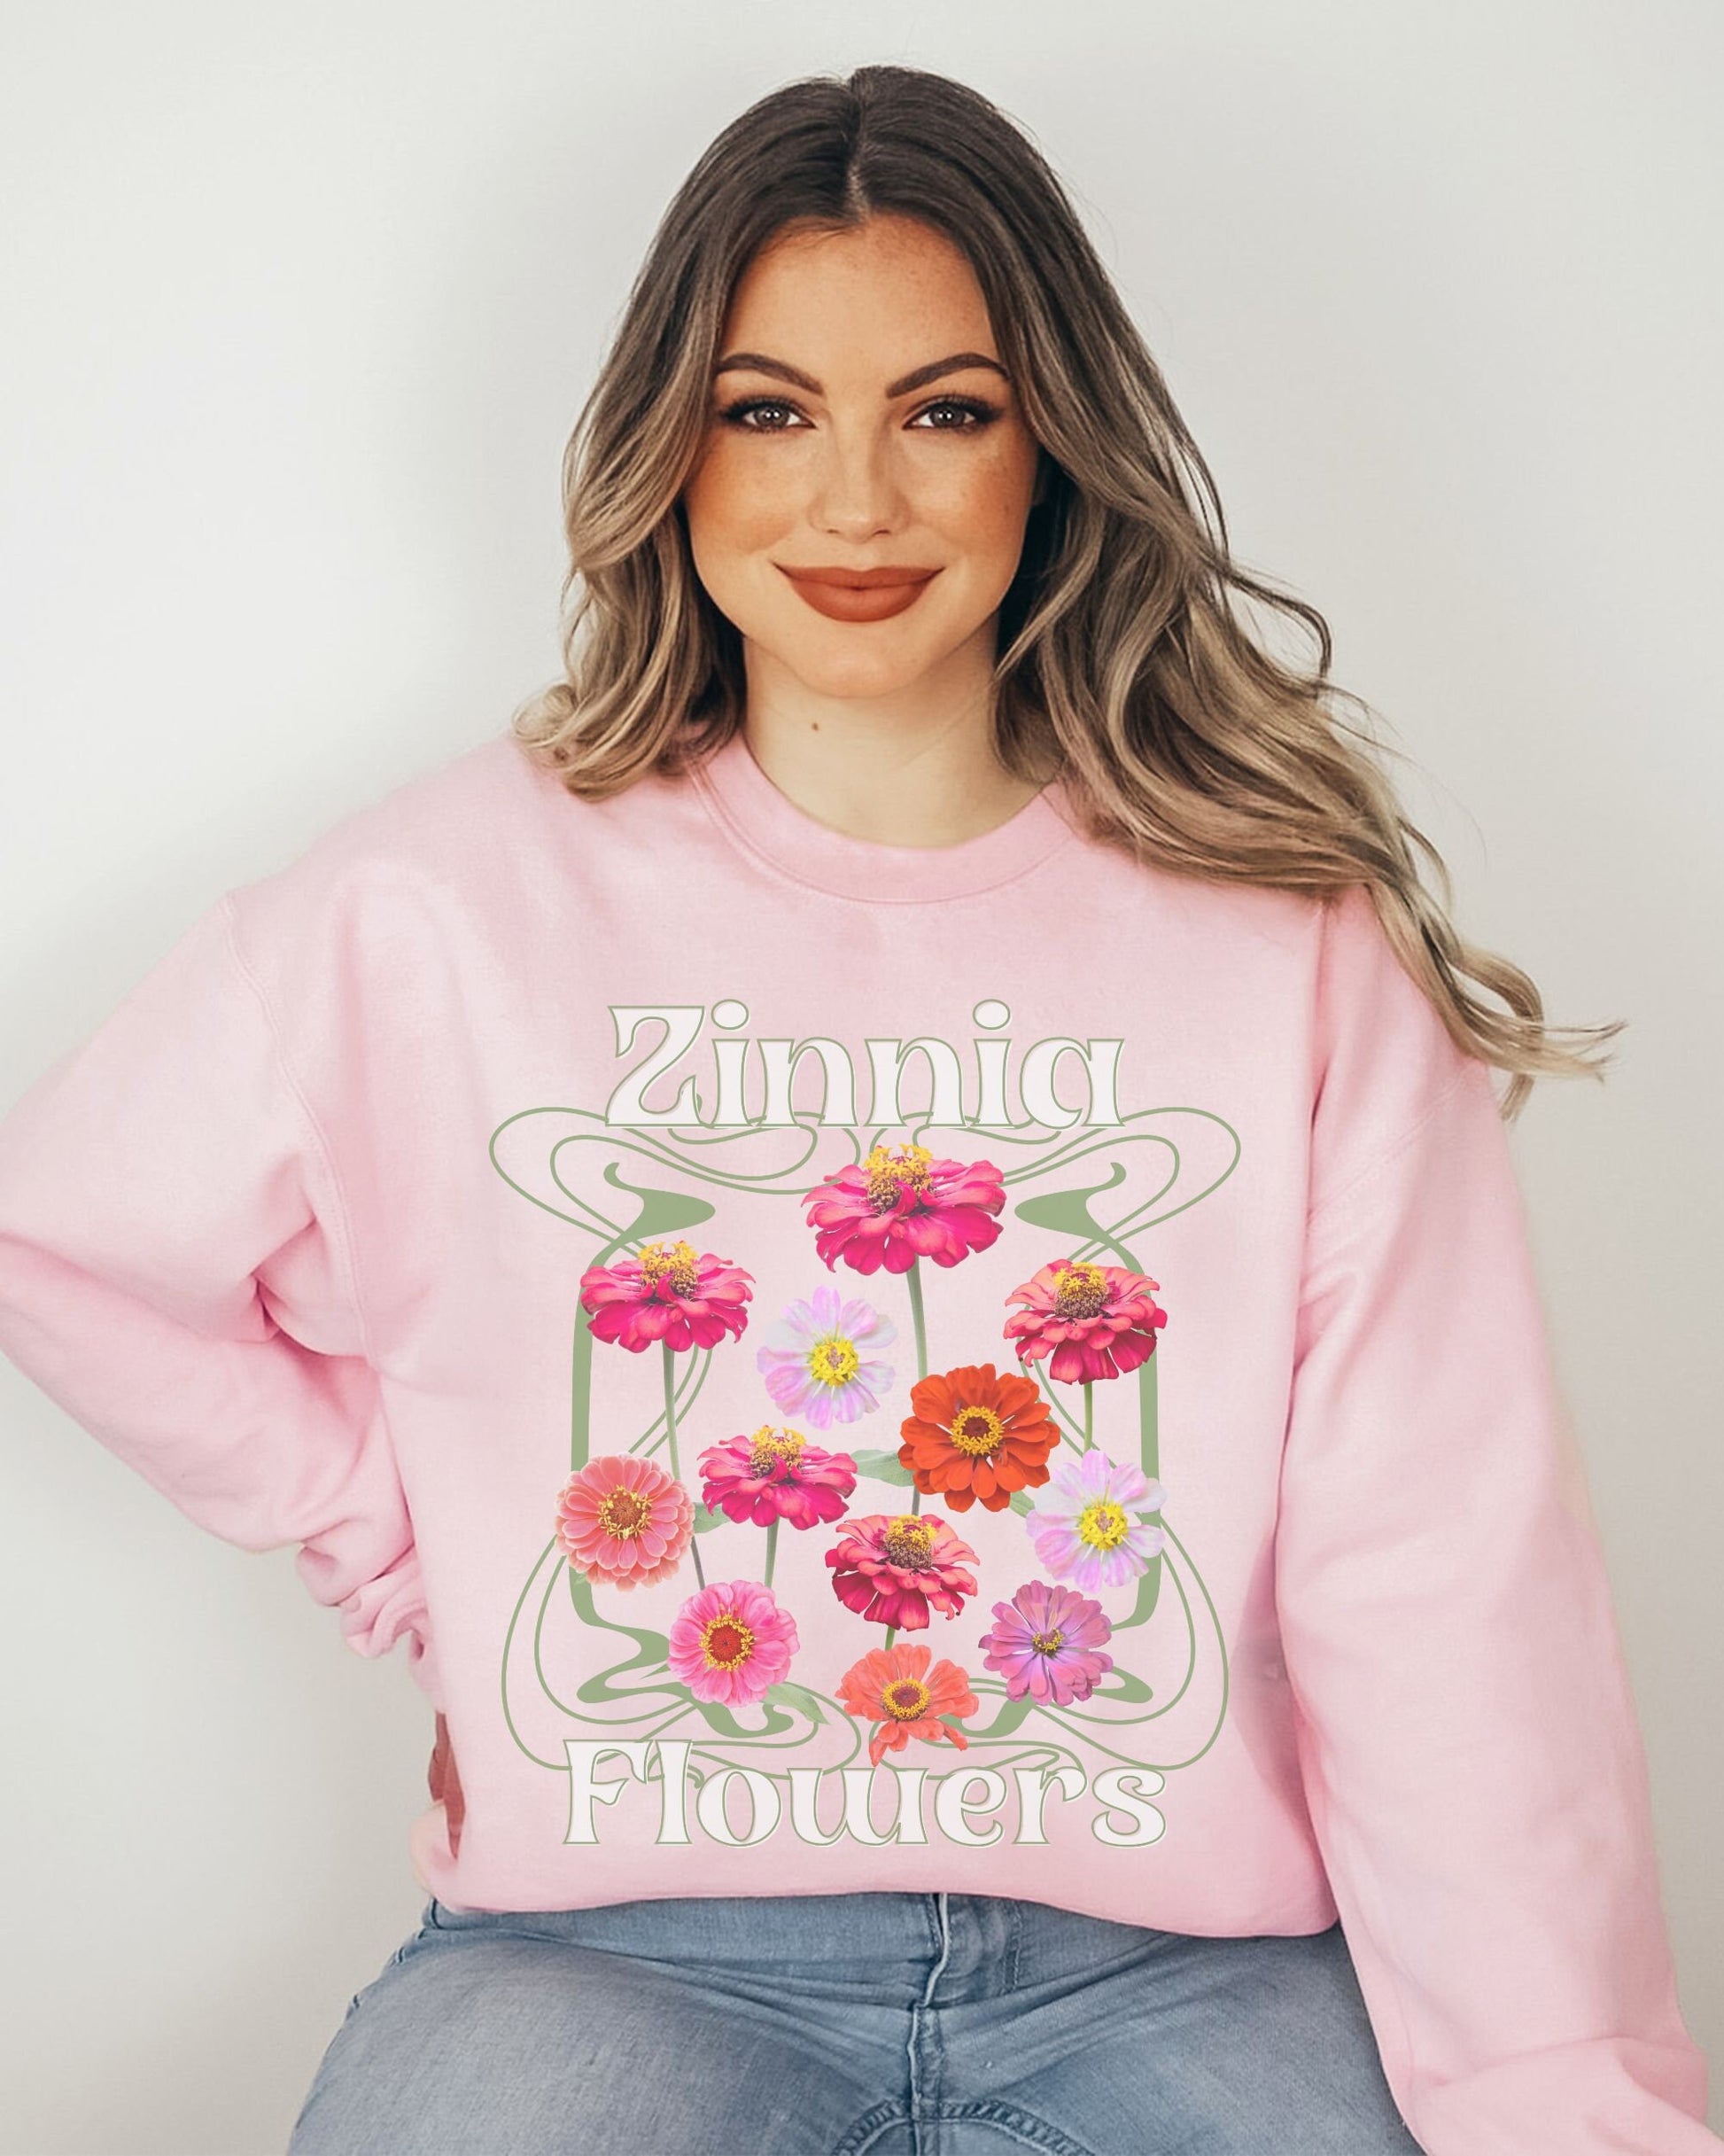 Zinnia Wild Flowers Crewneck Sweatshirt Cottagecore Clothes Boho Sweatshirt Cottagecore Sweater Pressed Flower Shirt Garden Lover Gift